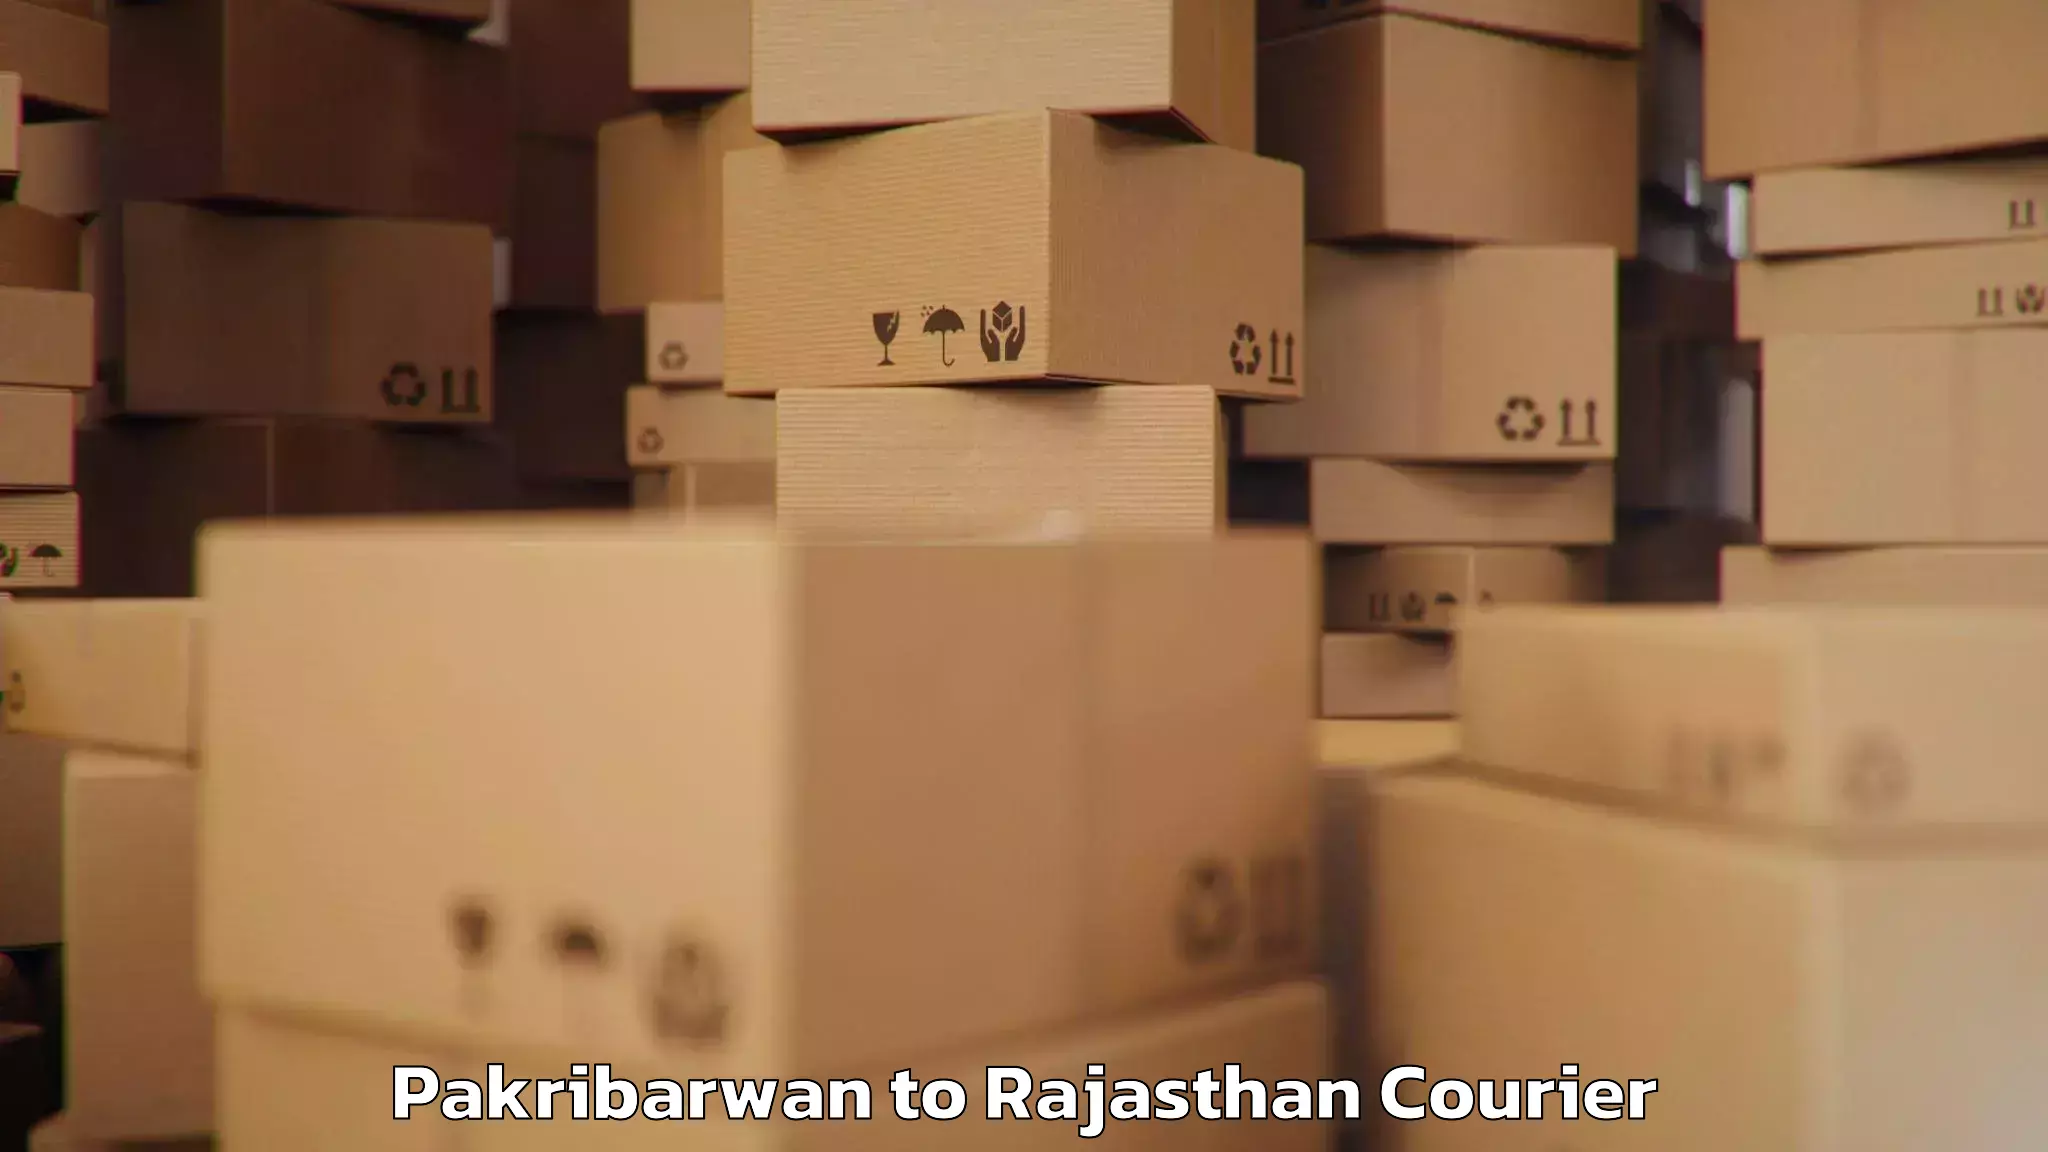 Baggage shipping optimization Pakribarwan to Rajasthan